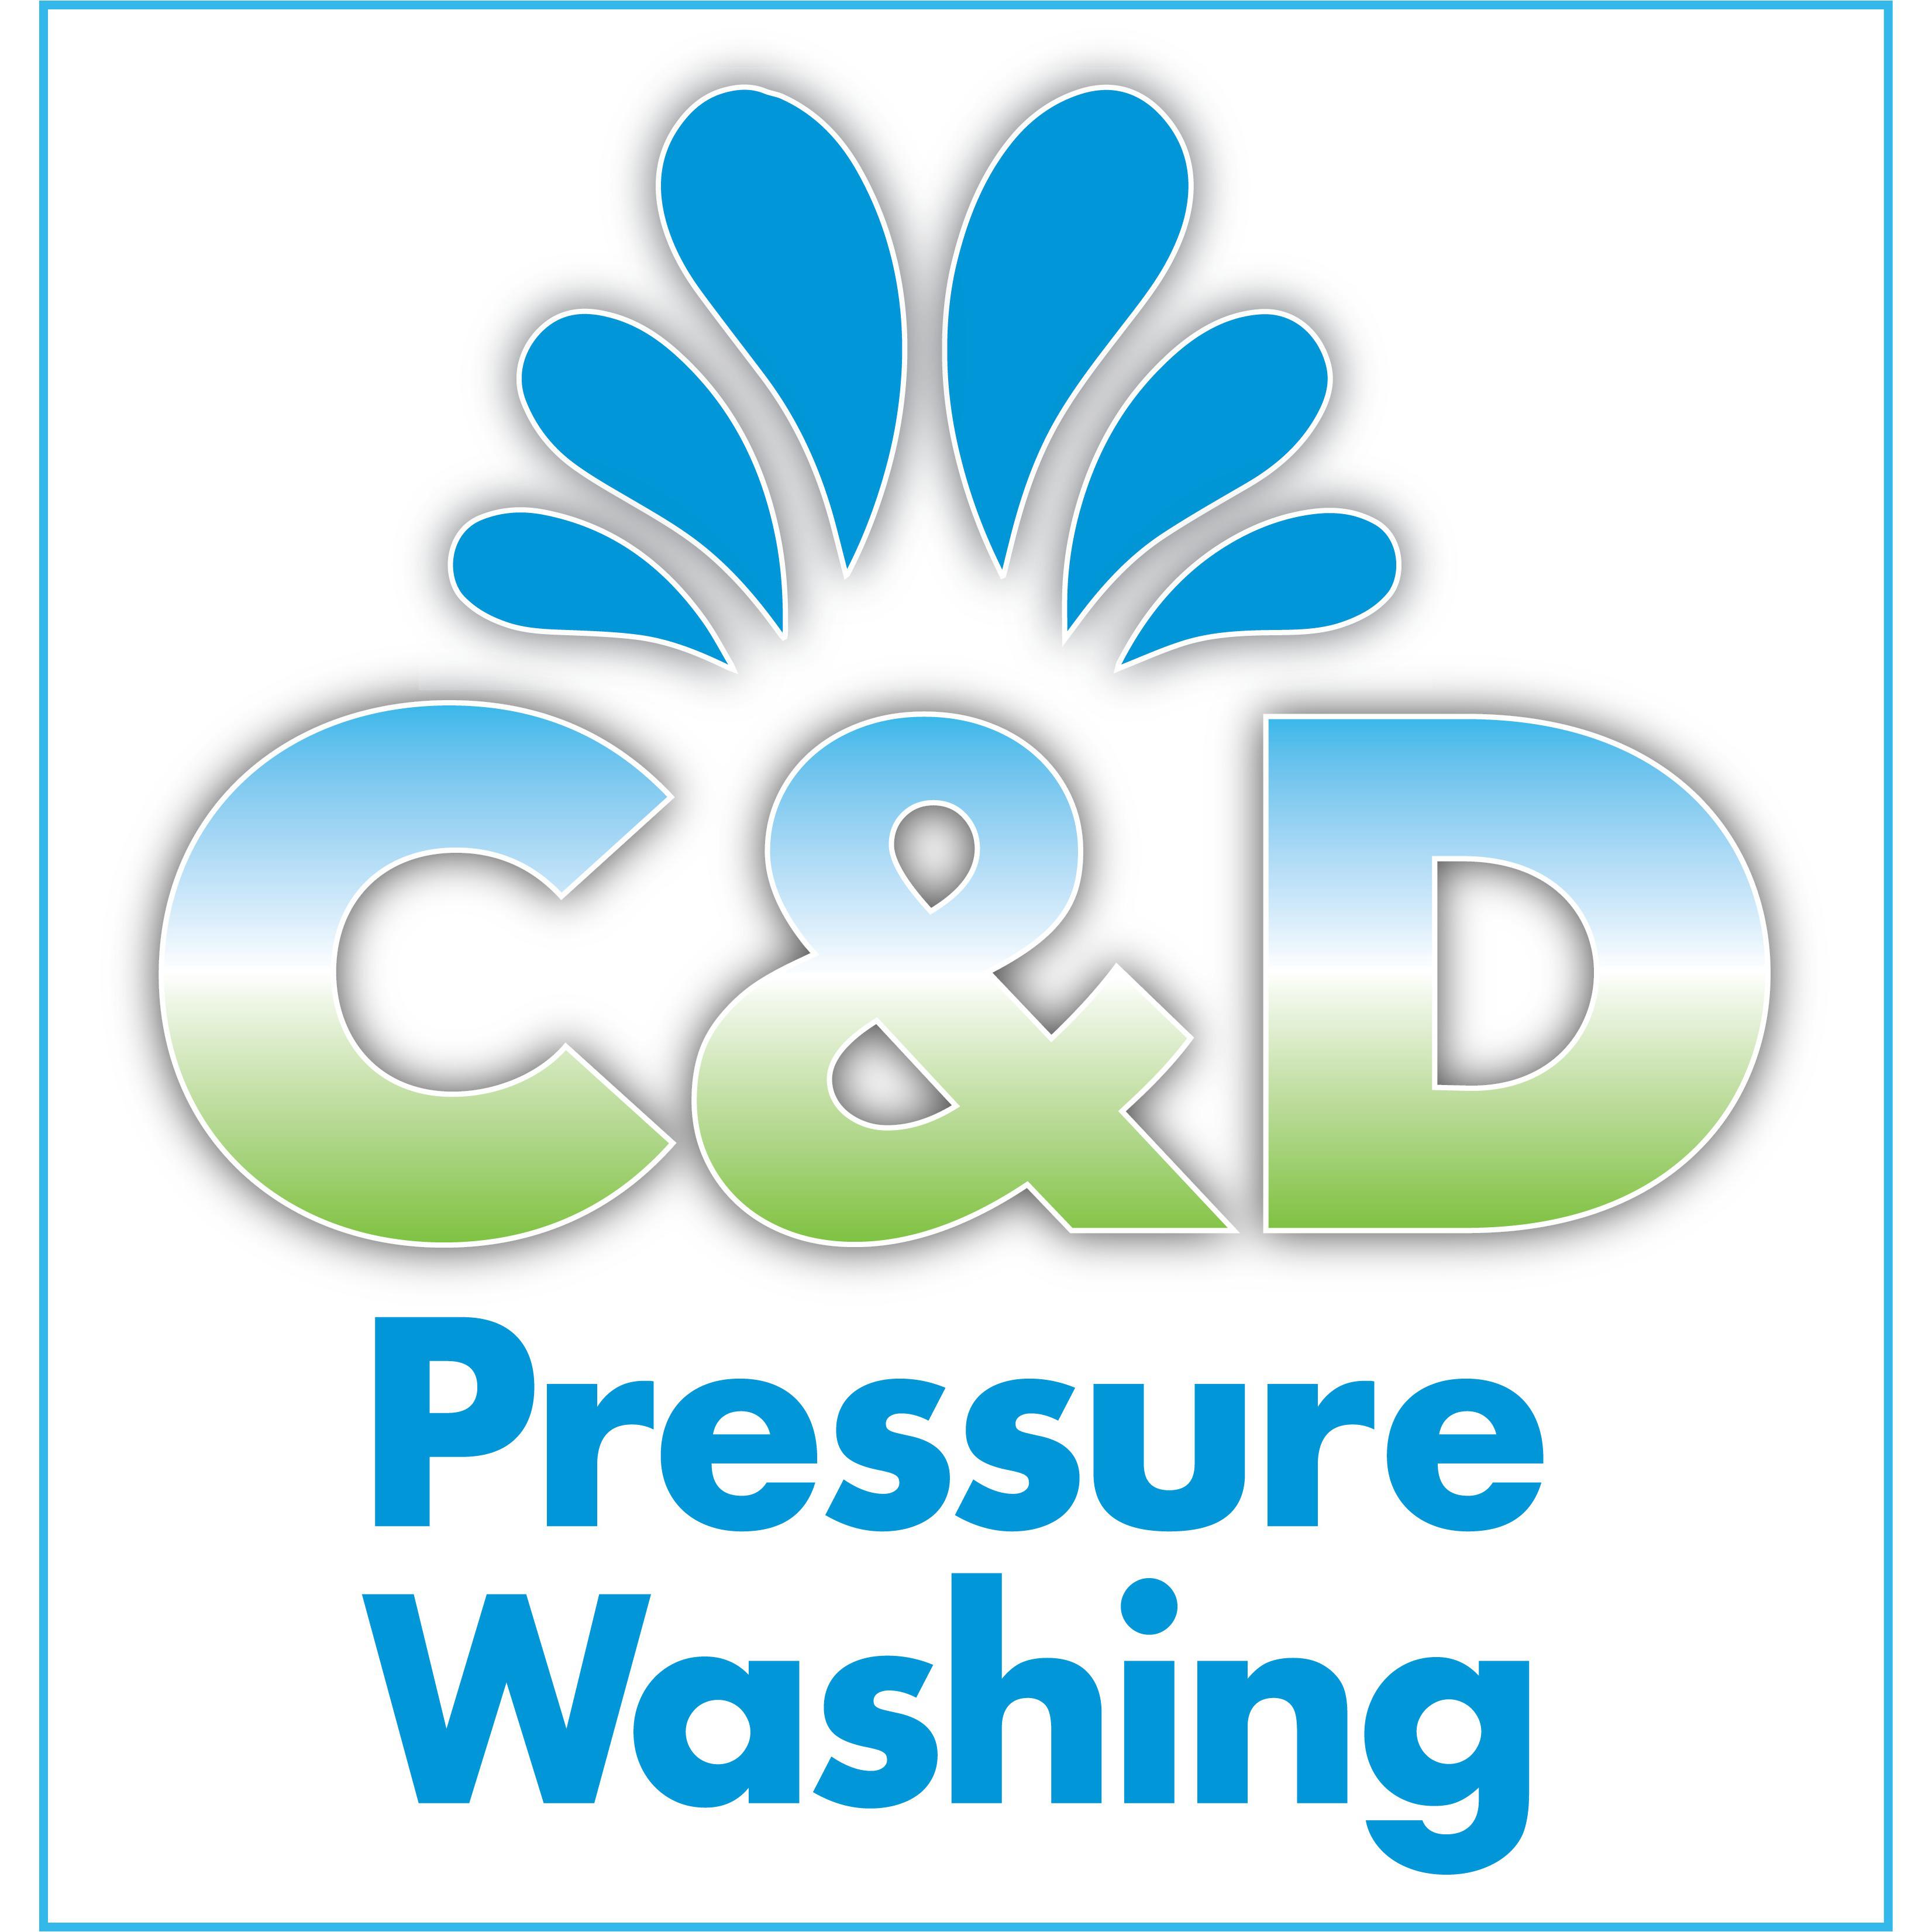 C & D Pressure Washing Savannah (912)224-9217